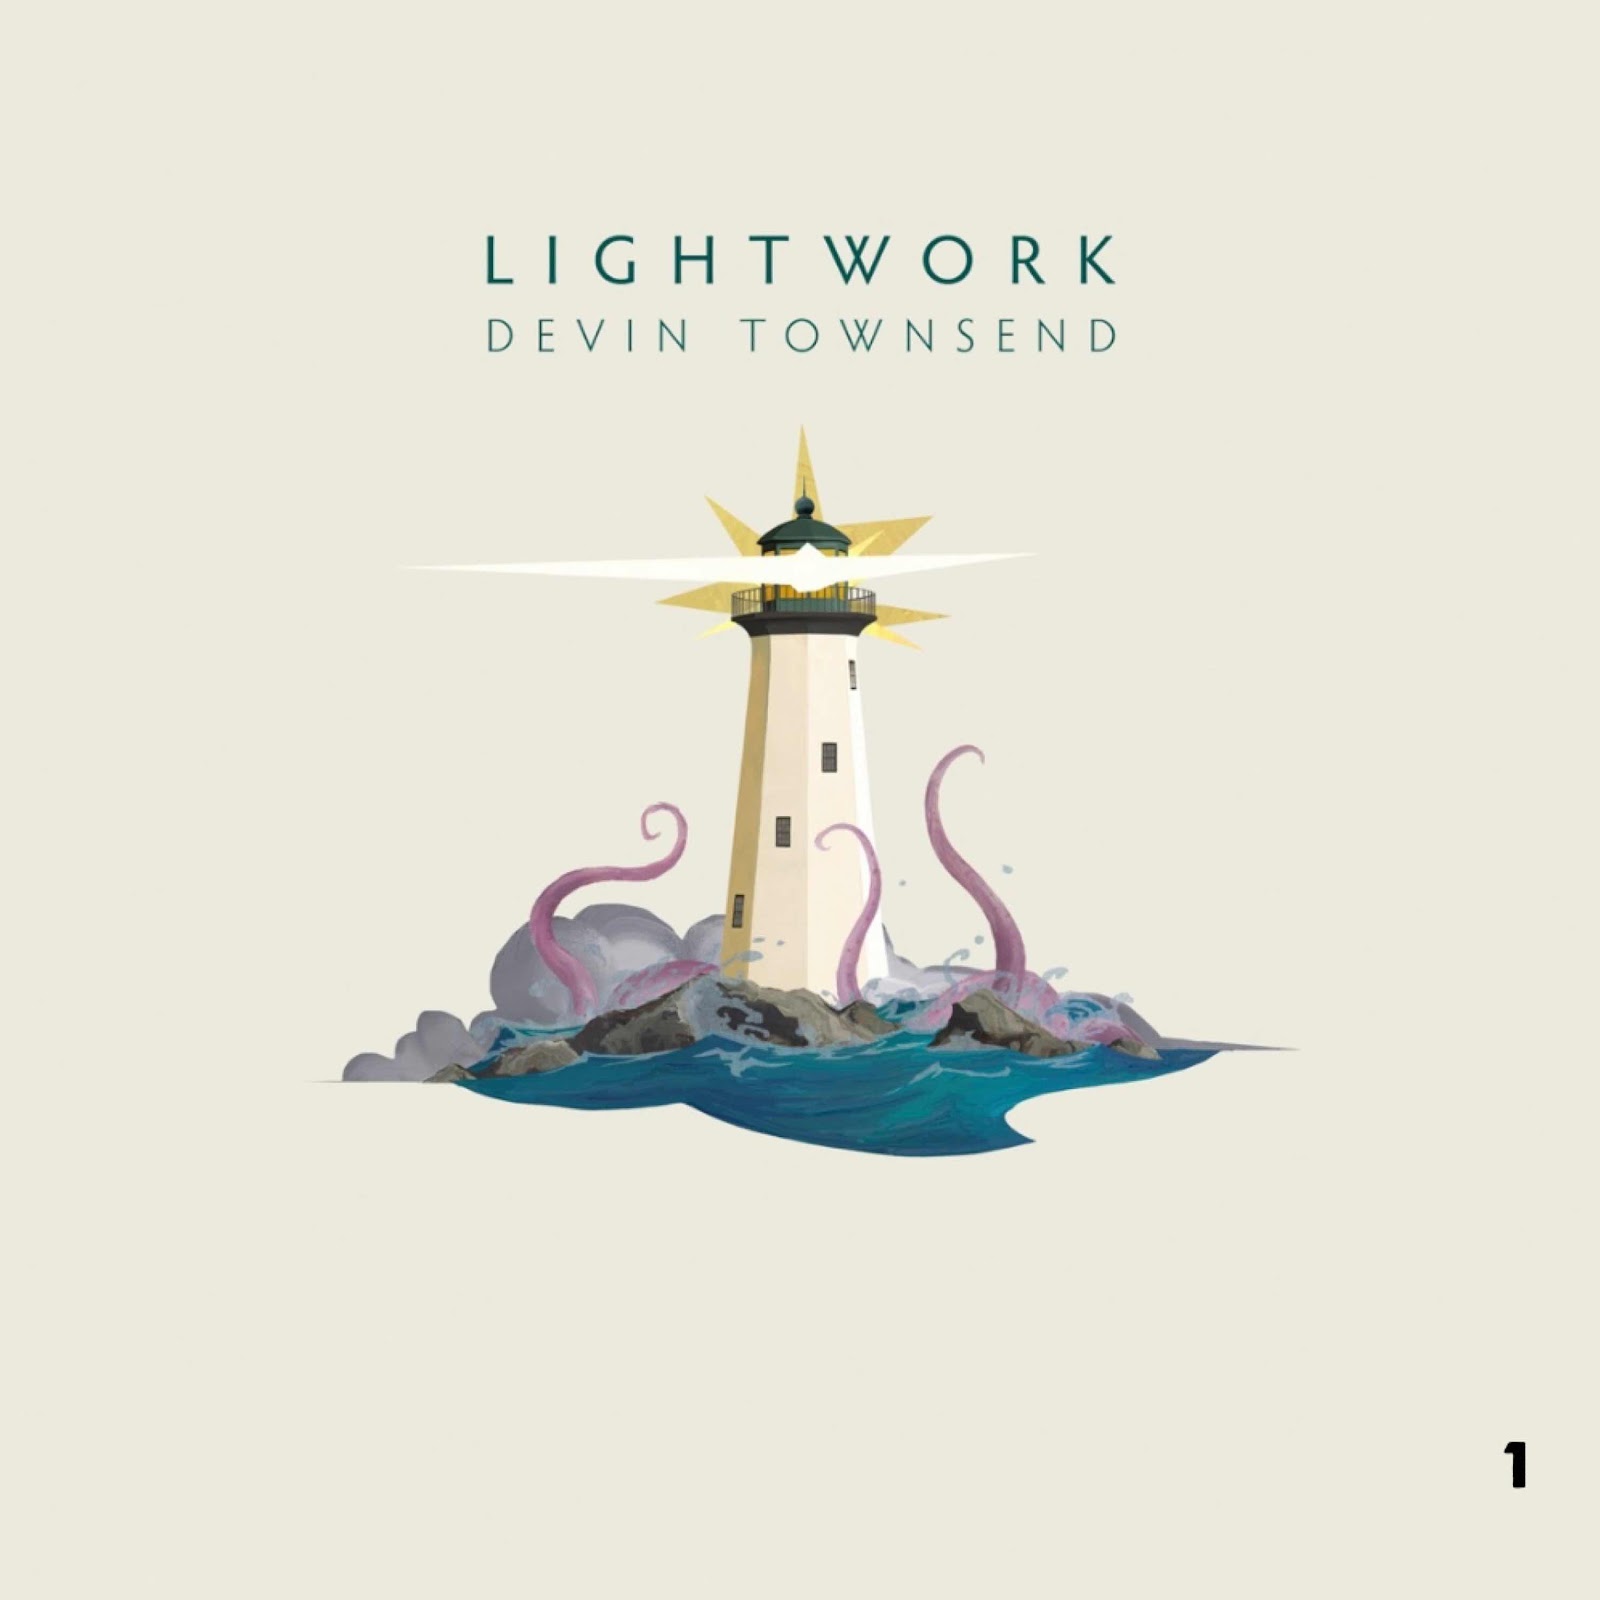 Devin Townsend “Lightwork”